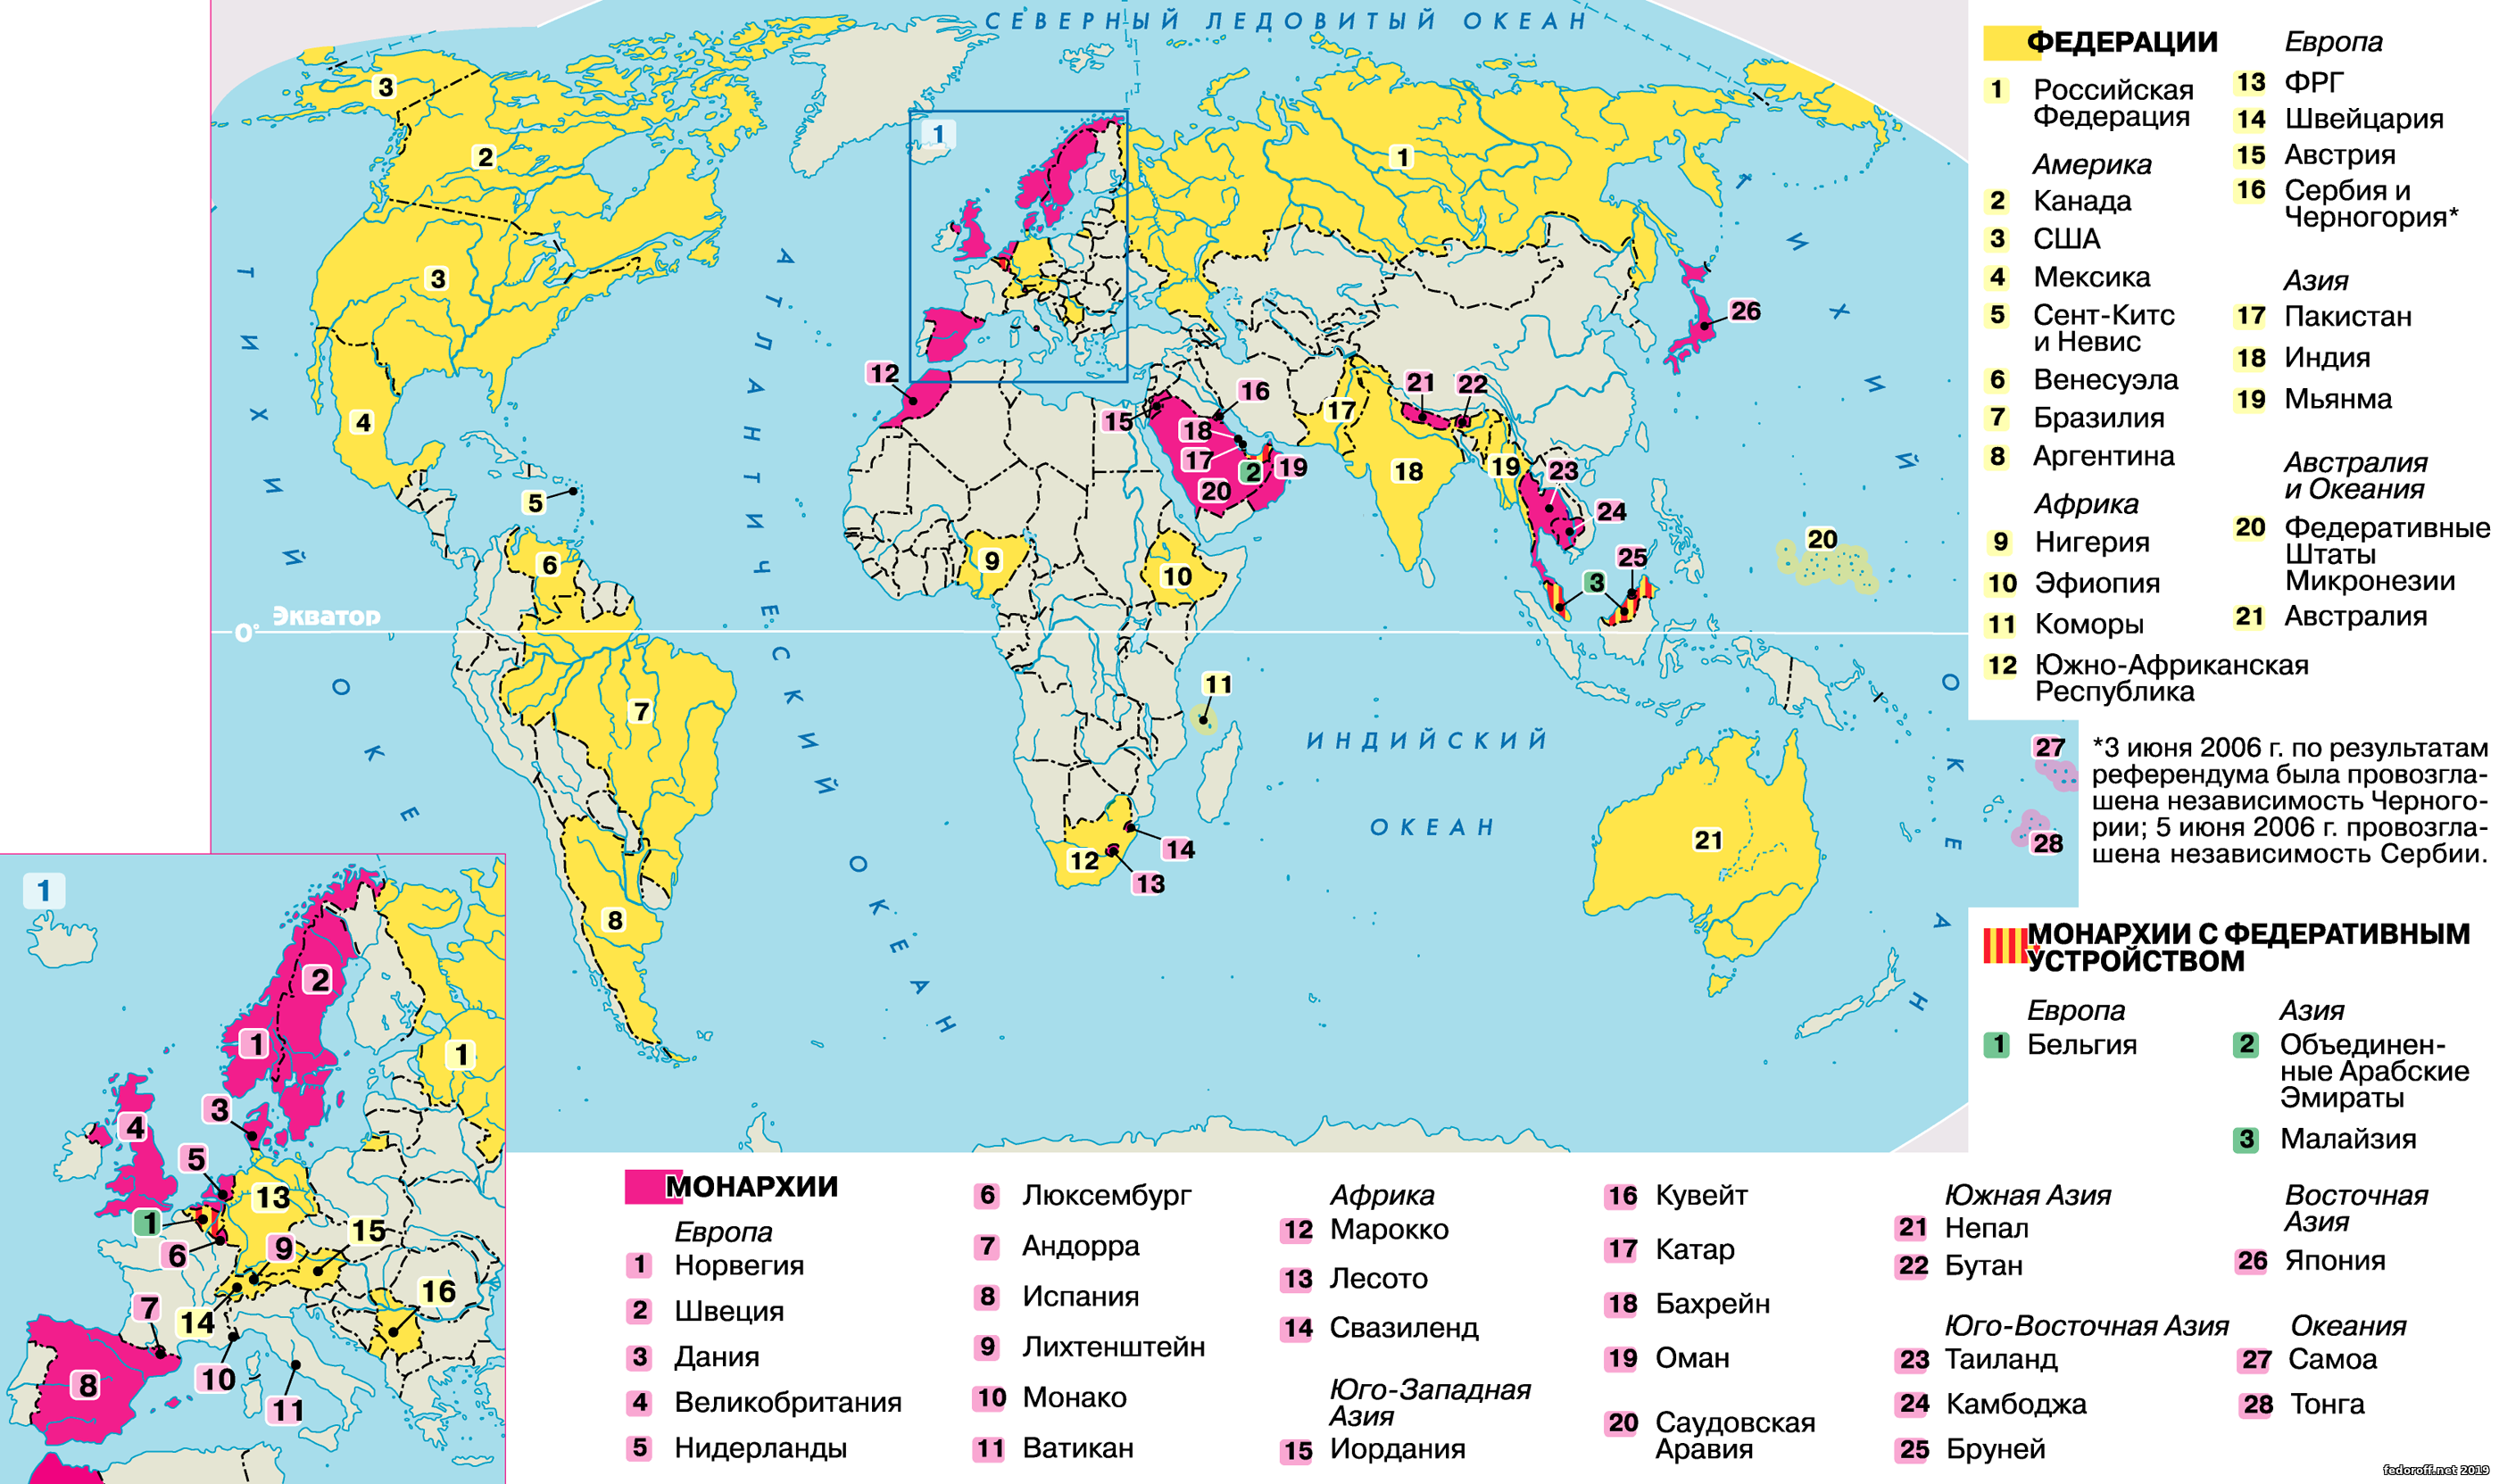 22 страны федерации. Страны с монархической формой правления политическая карта. Страны с ыелеративной ыориоц правления.